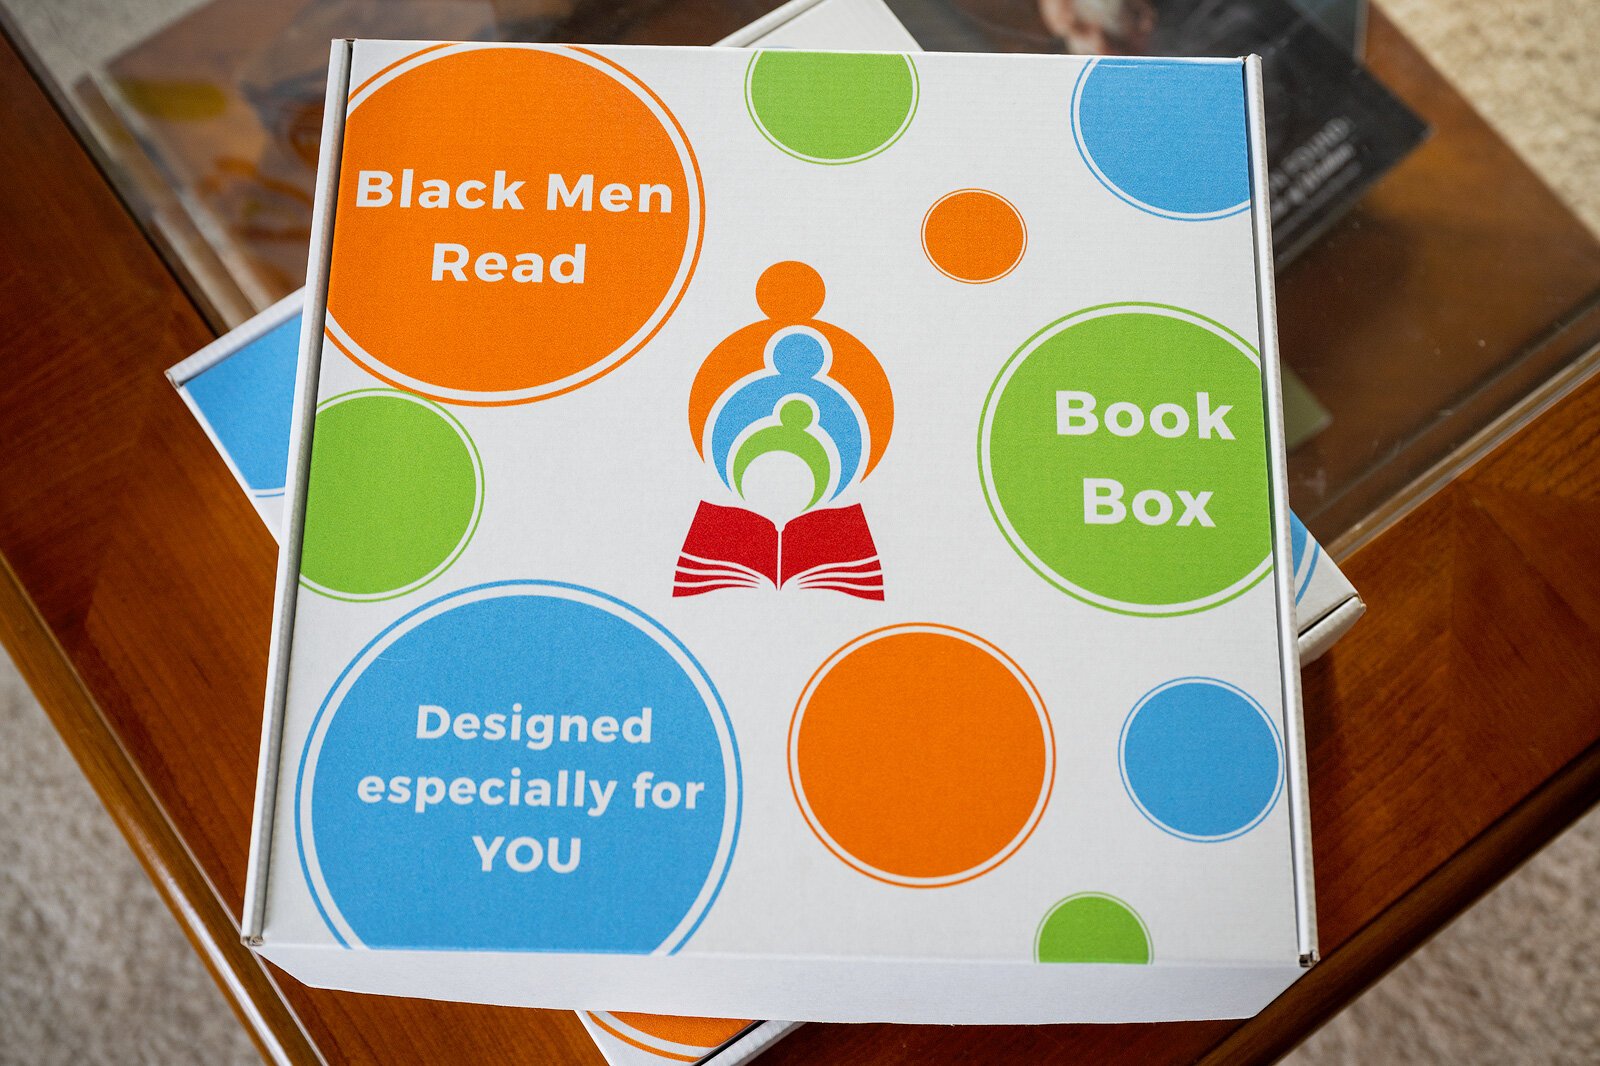 Black Men Read subscription book boxes